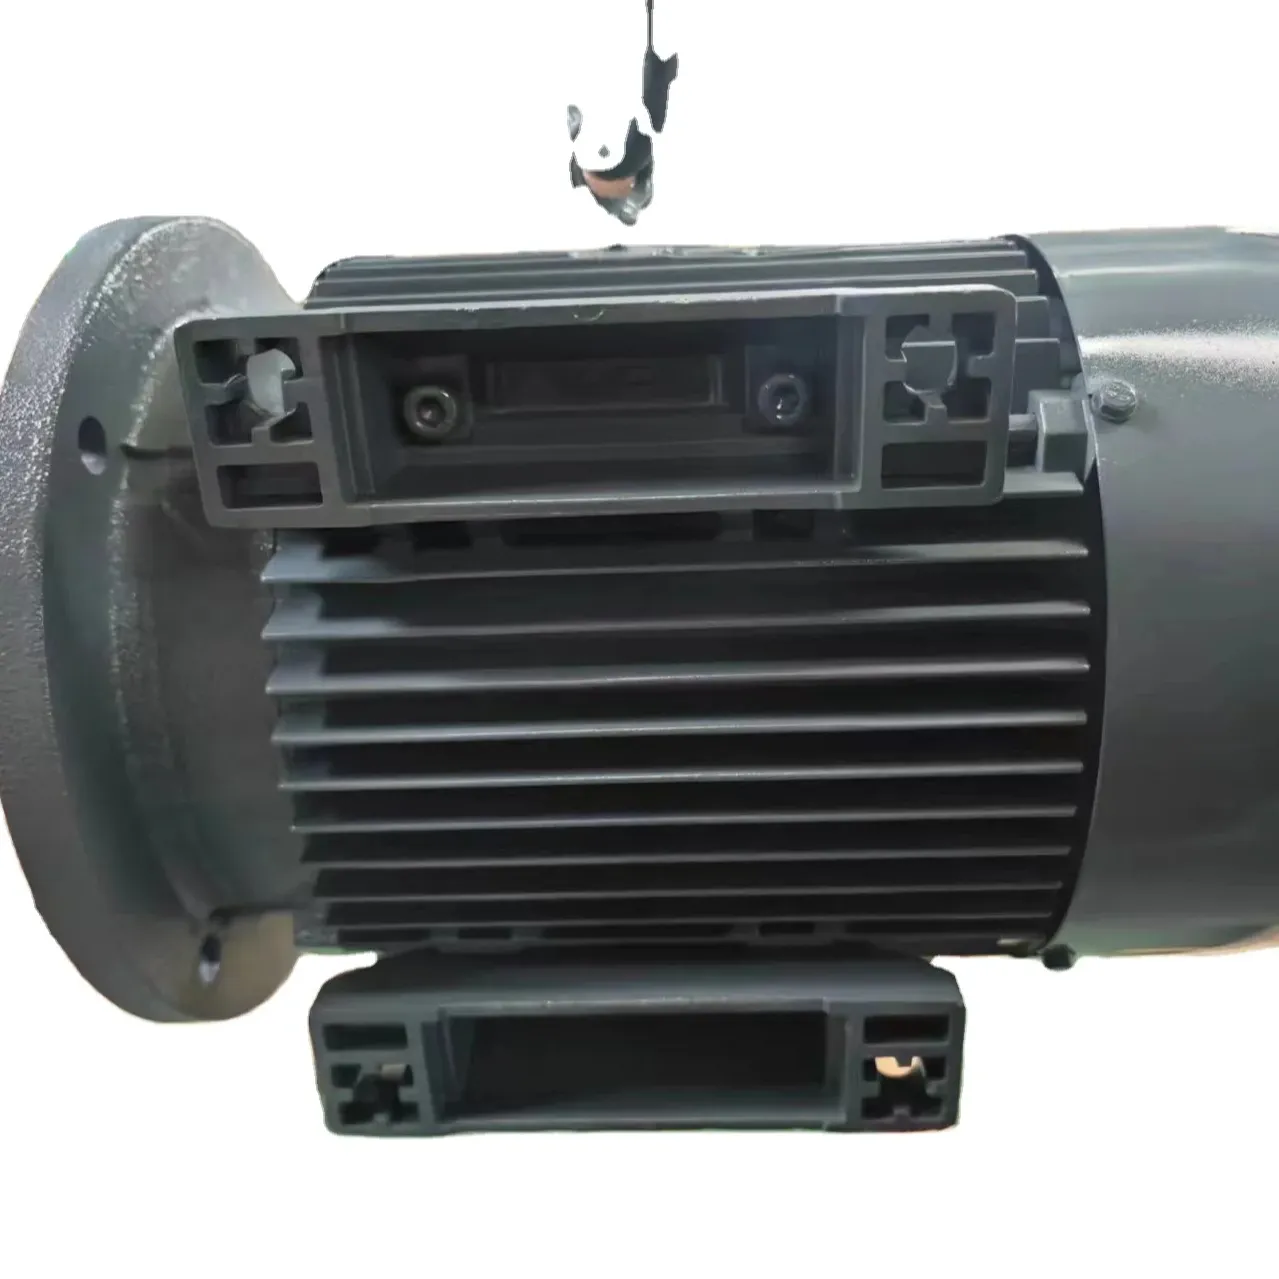 Riduttore di velocità motoriduttore motore fuoribordo motore 4 tempi trasmissione riduttore cambio motore elettrico 50 kw